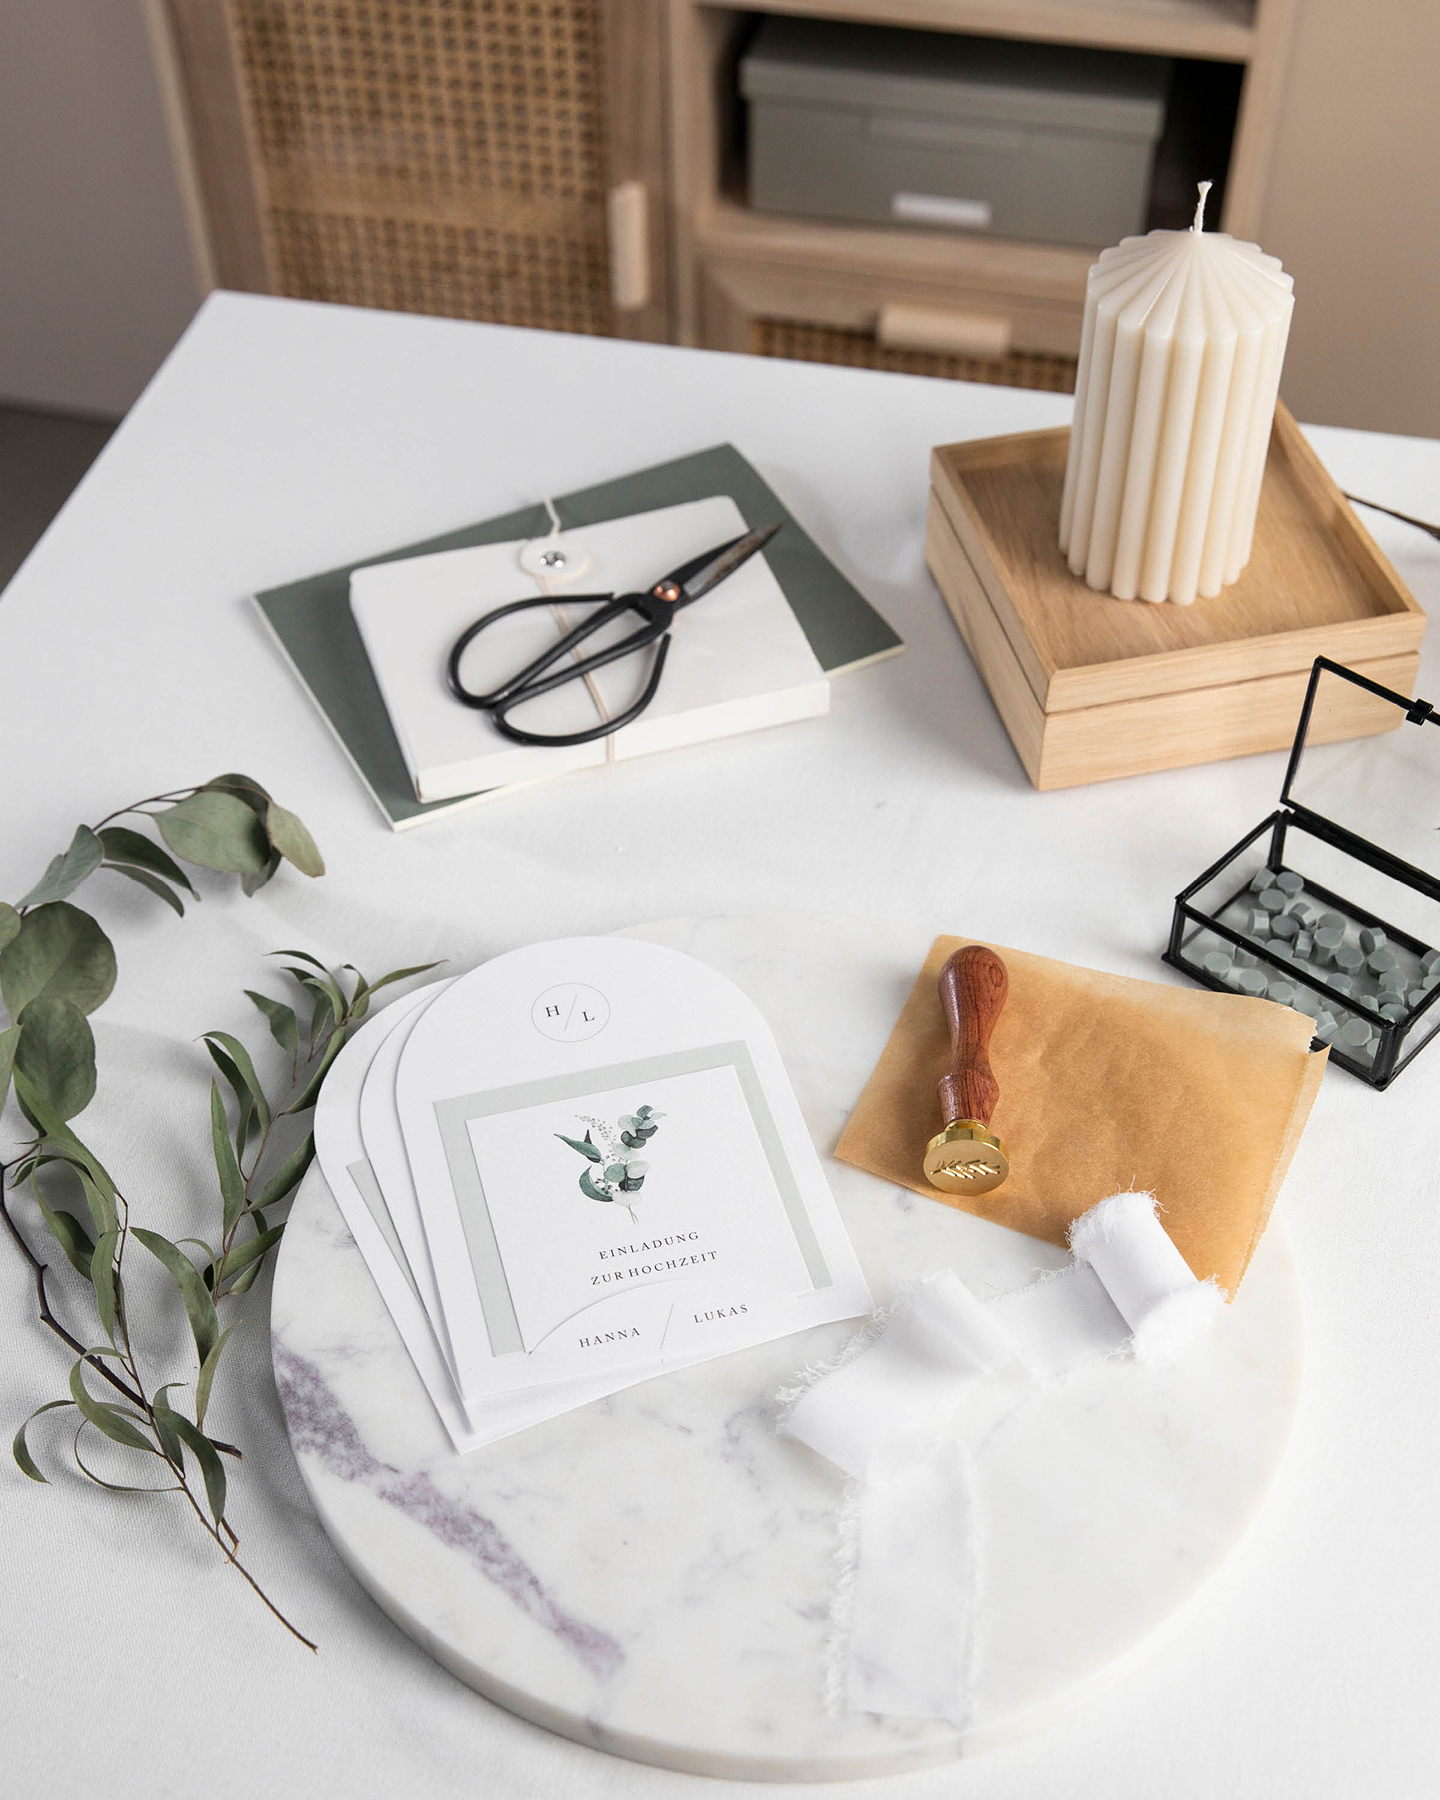 Materialien für DIY Hochzeitseinladung mit Wachssiegeln liegen auf dem Tisch.